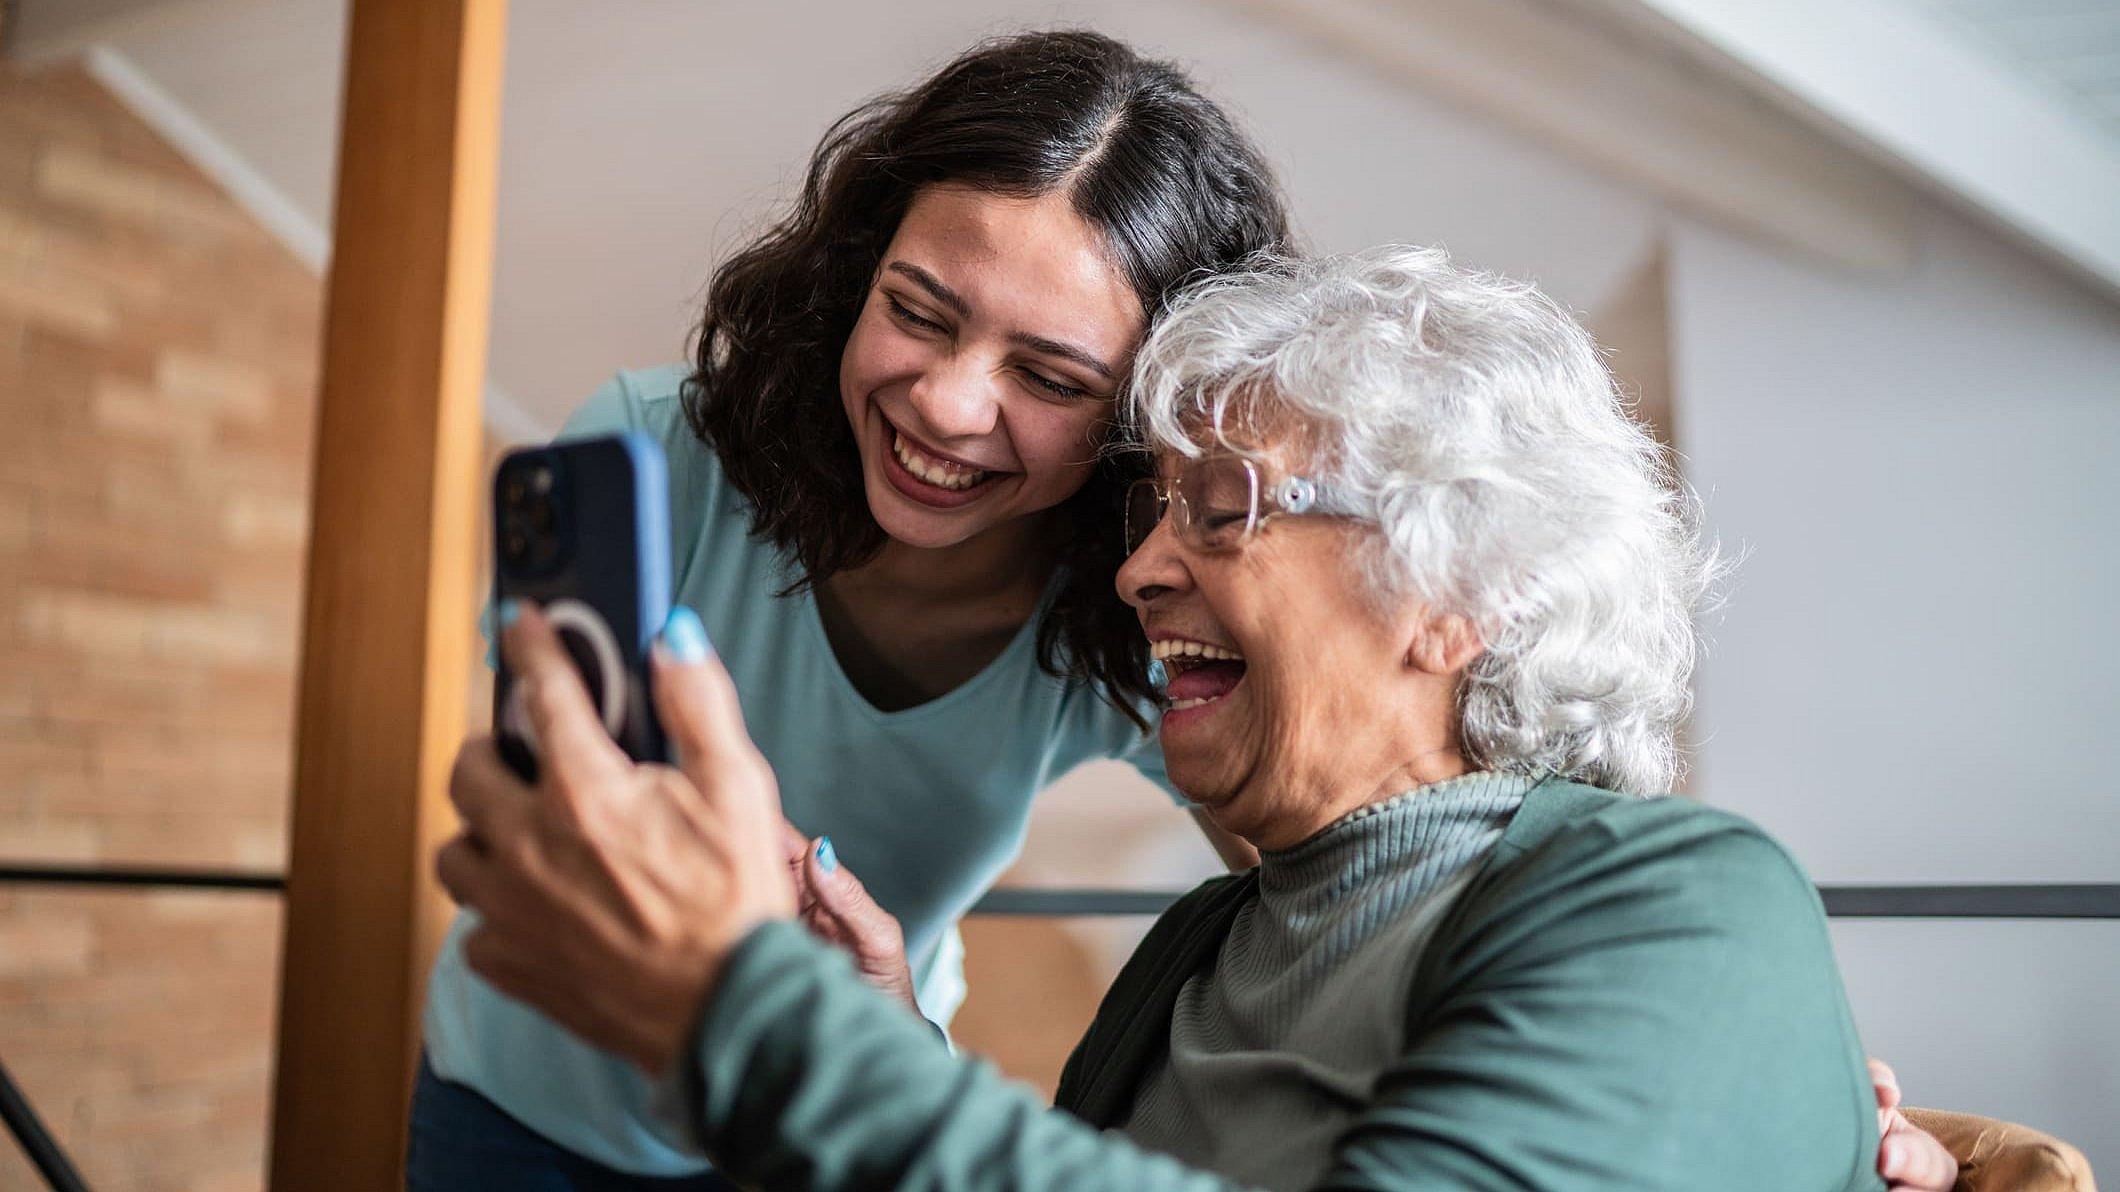 Eine ältere Frau sitzt und hält ein Smartphone in der Hand, eine junge Frau beugt sich über sie und schaut auch in das Smartphone, beide lächeln und sehen sehr freundlich aus.